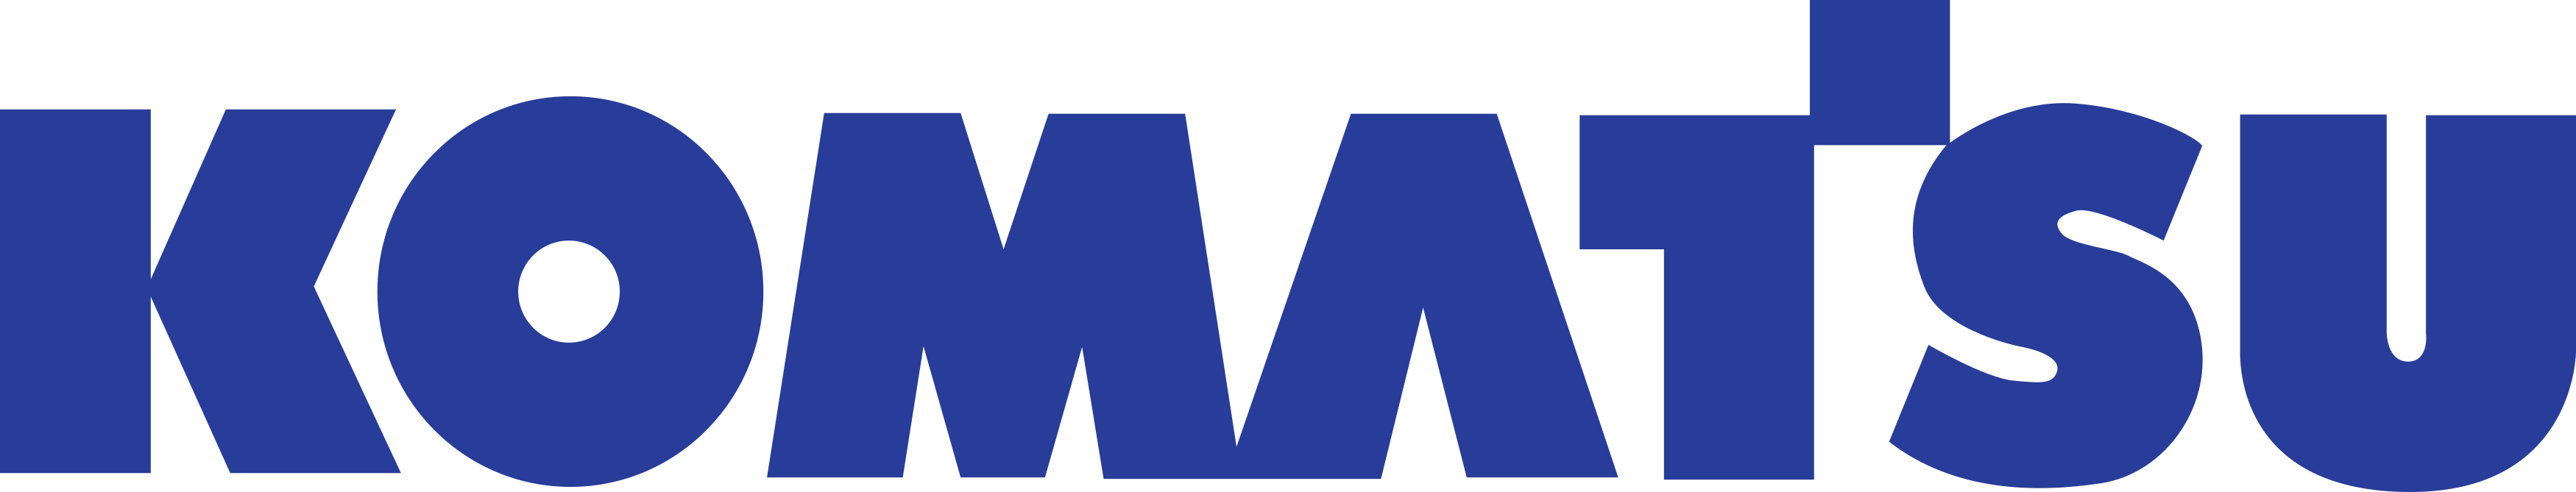 komatsu logo.